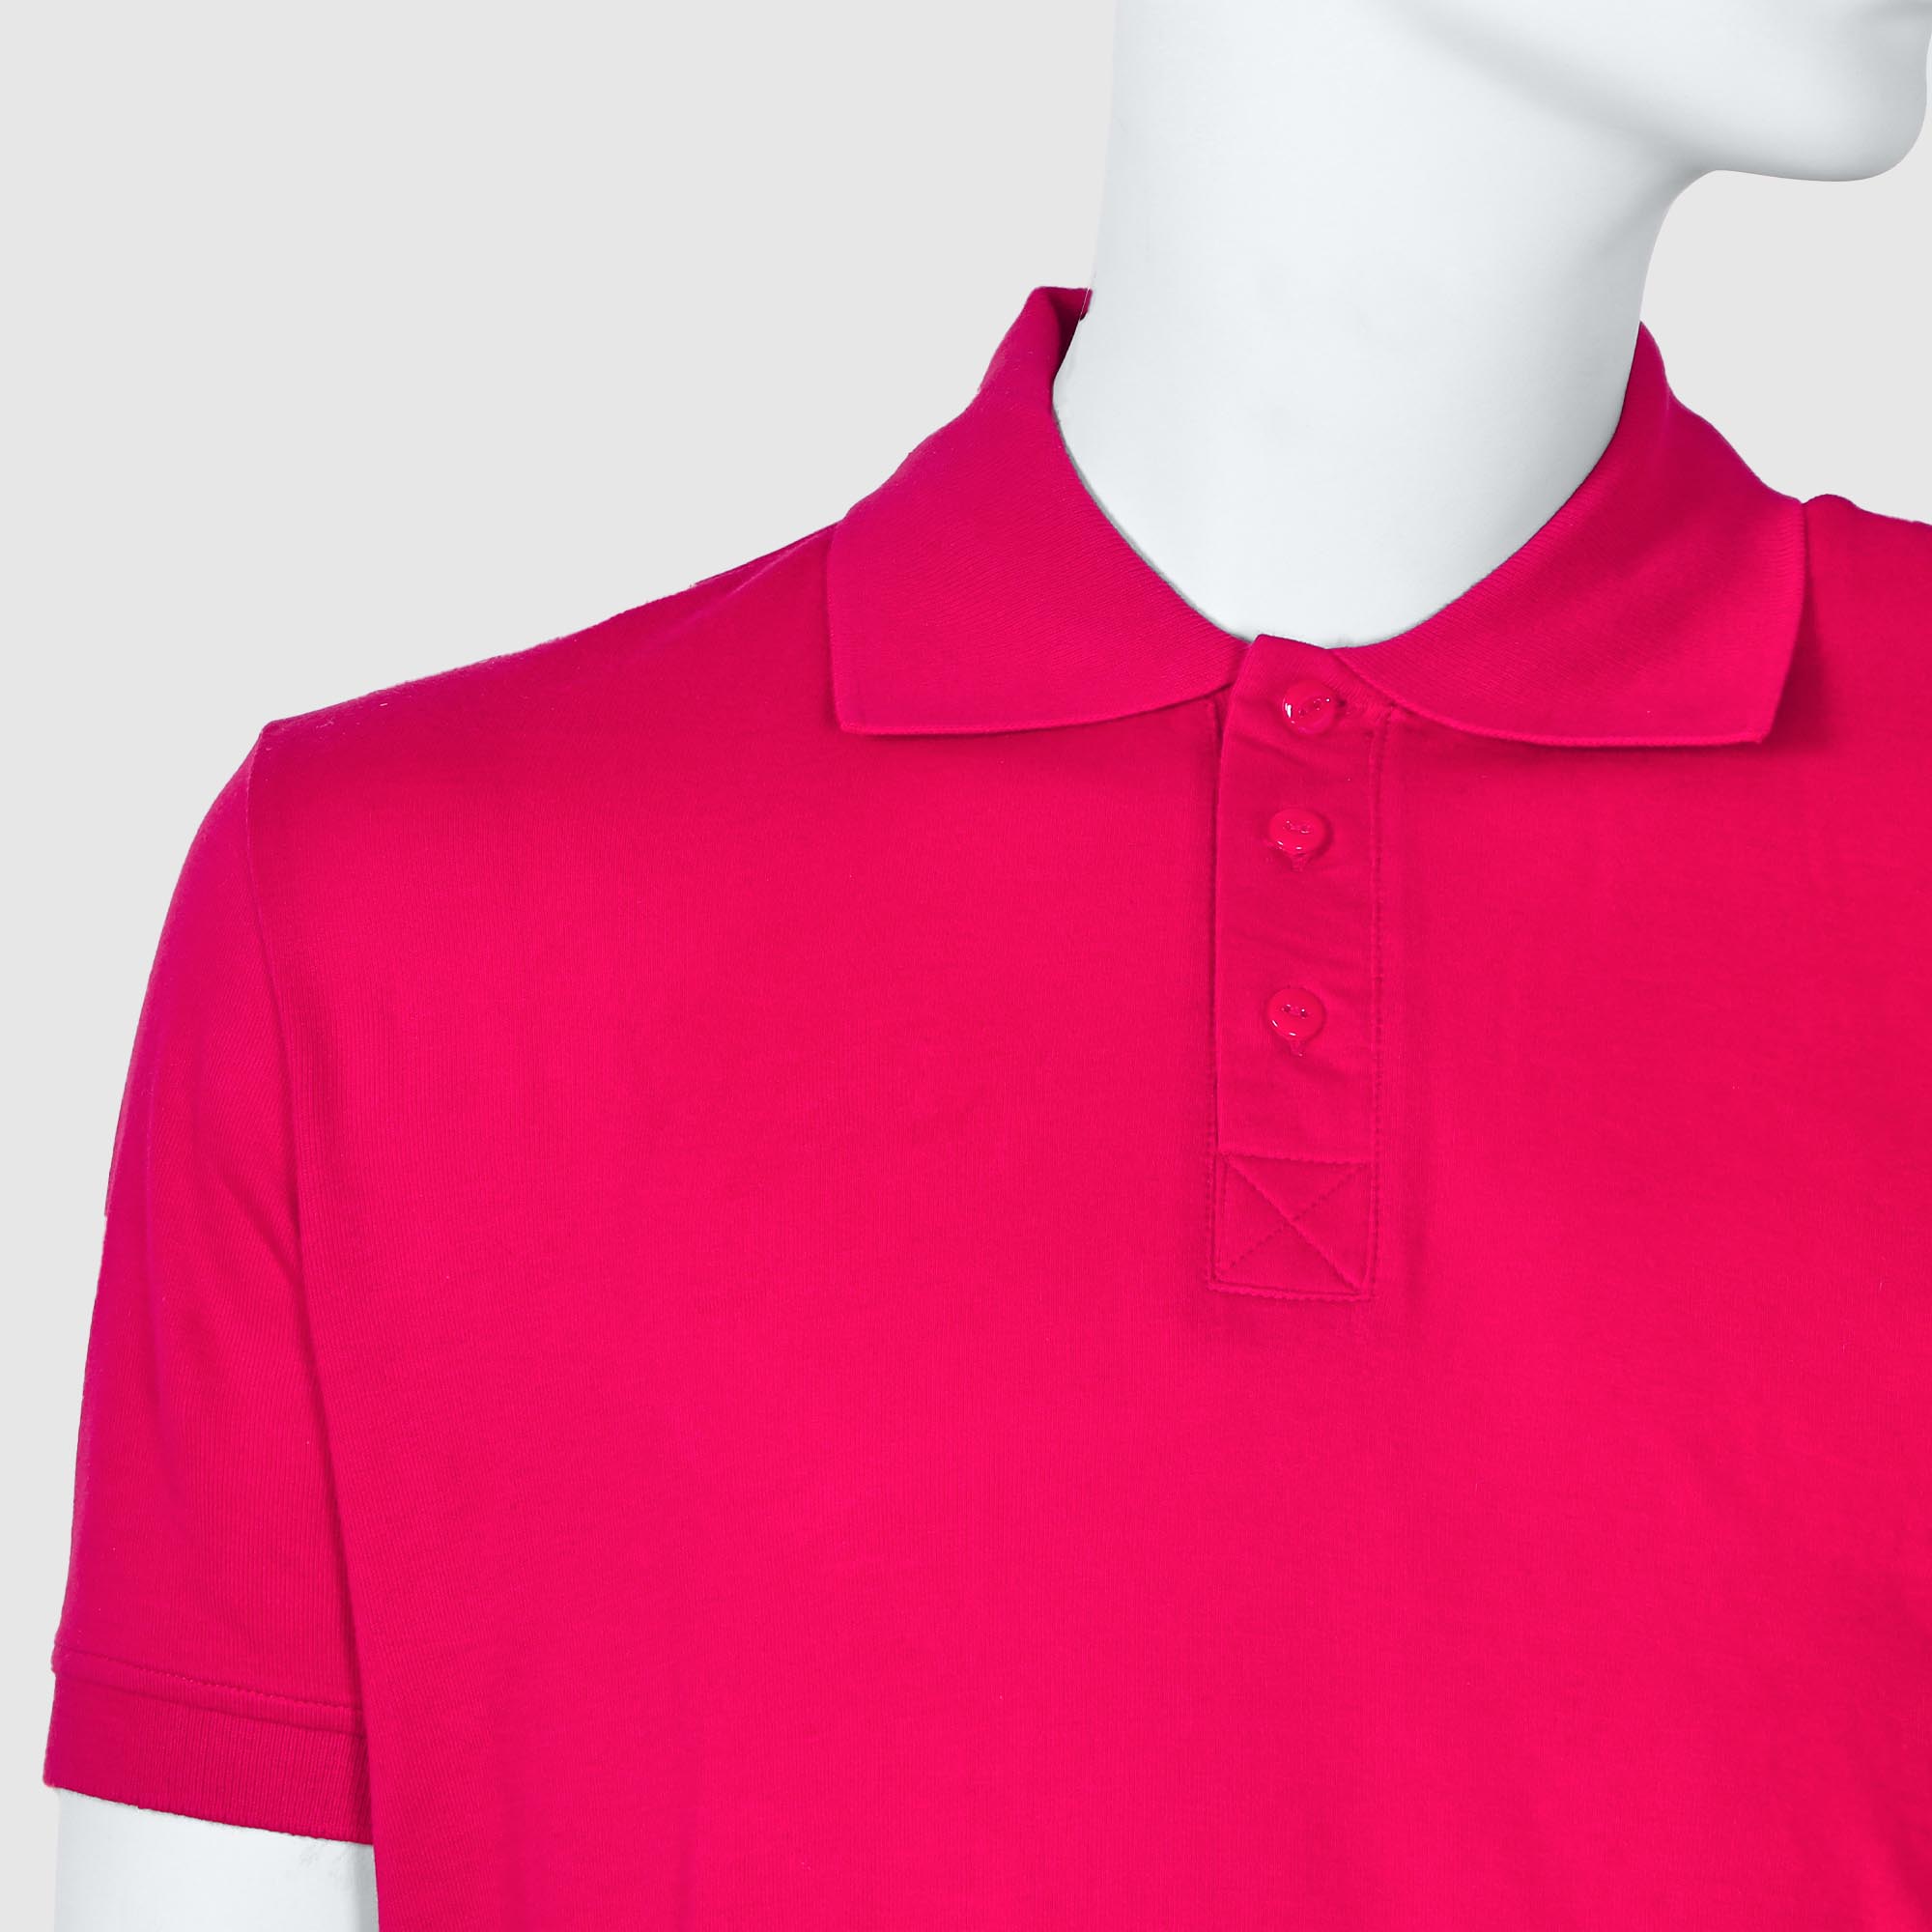 Мужская футболка-поло Diva Teks красная (DTD-08), цвет красный, размер 54-56 - фото 3